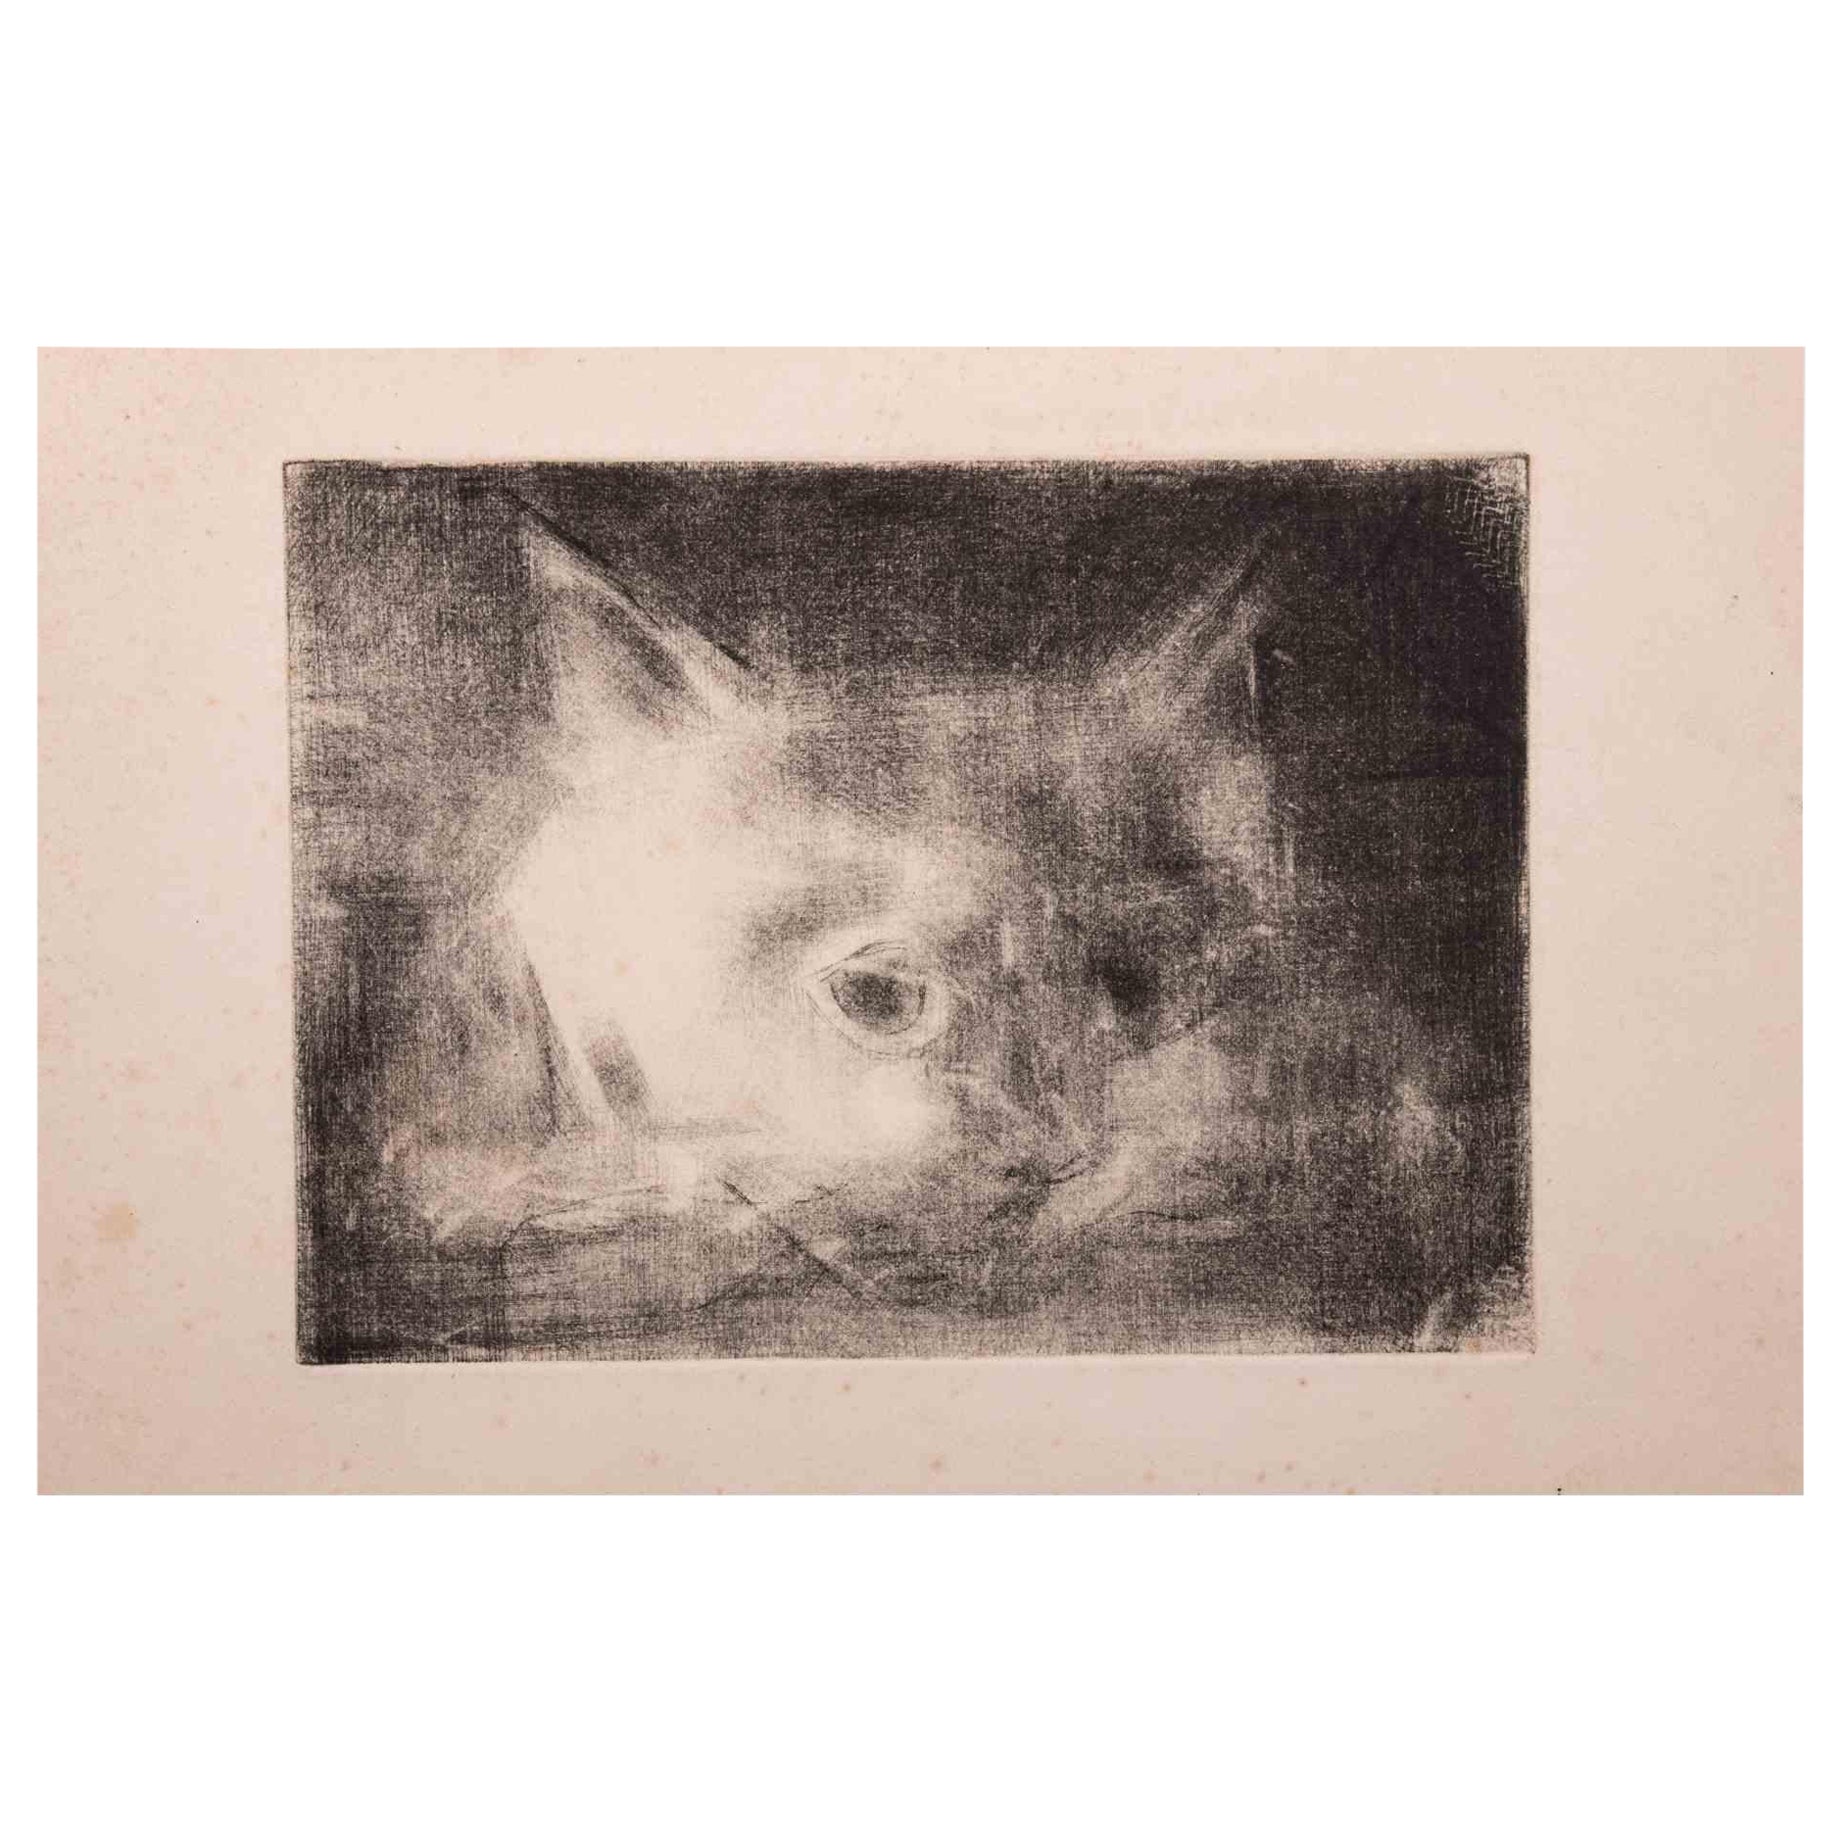 Die Katze ist eine Original-Radierung auf Papier von Giselle Halff aus dem Jahr 1950.

Guter Zustand mit einigen Stockflecken.
.